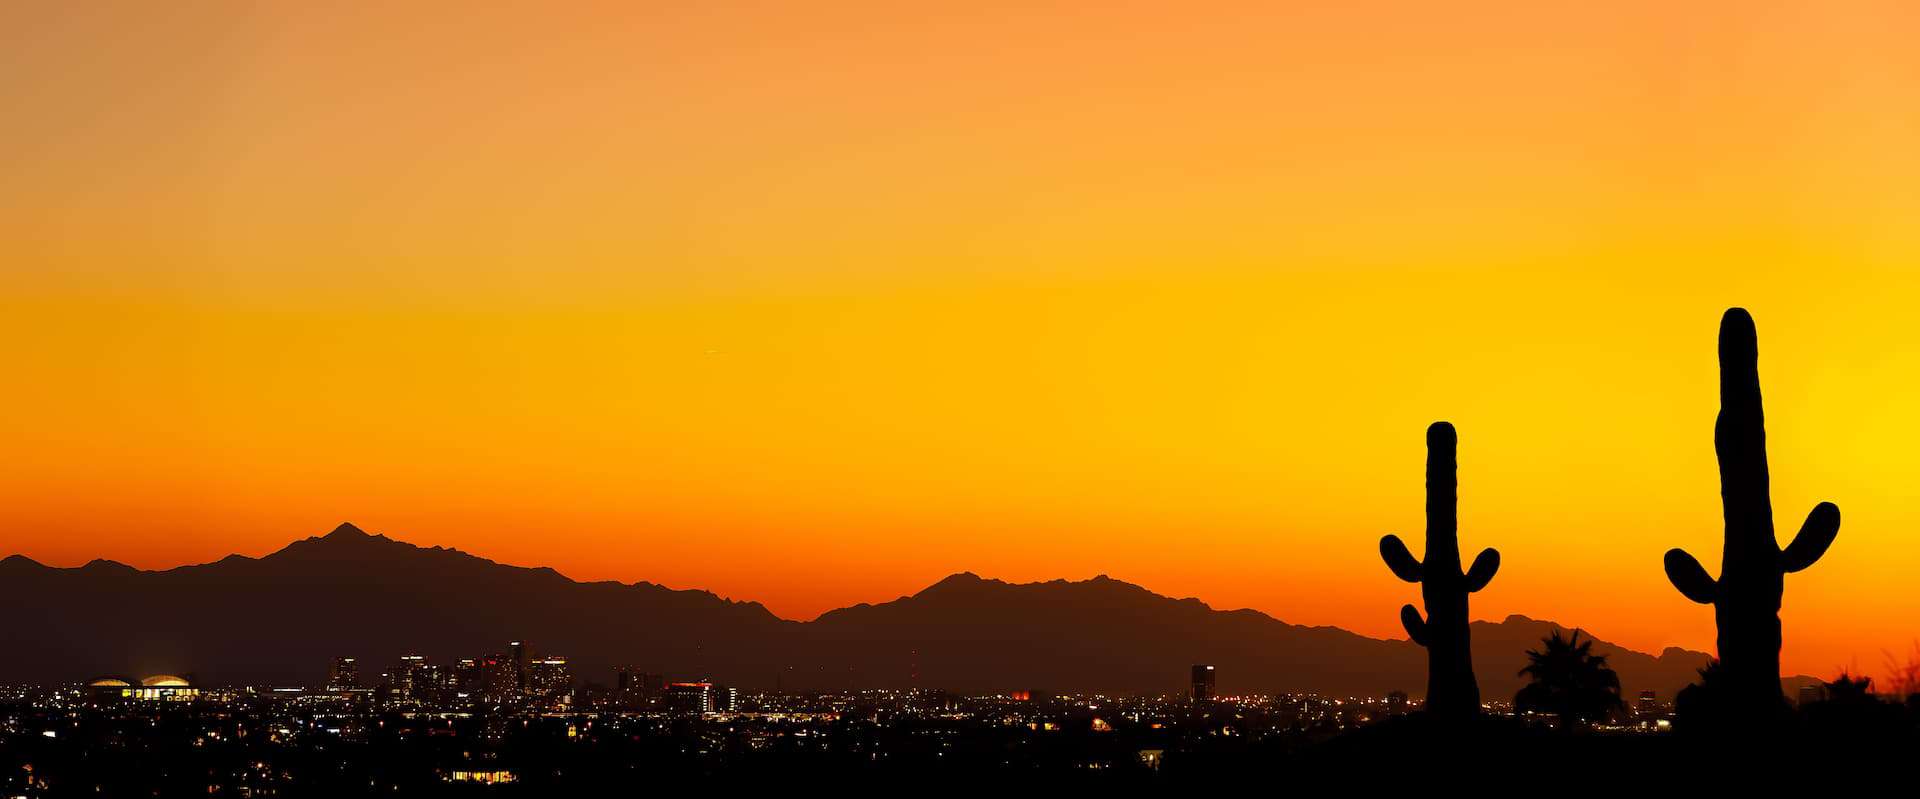 Sunset in Tuscon, Arizona overlooking the city lights.